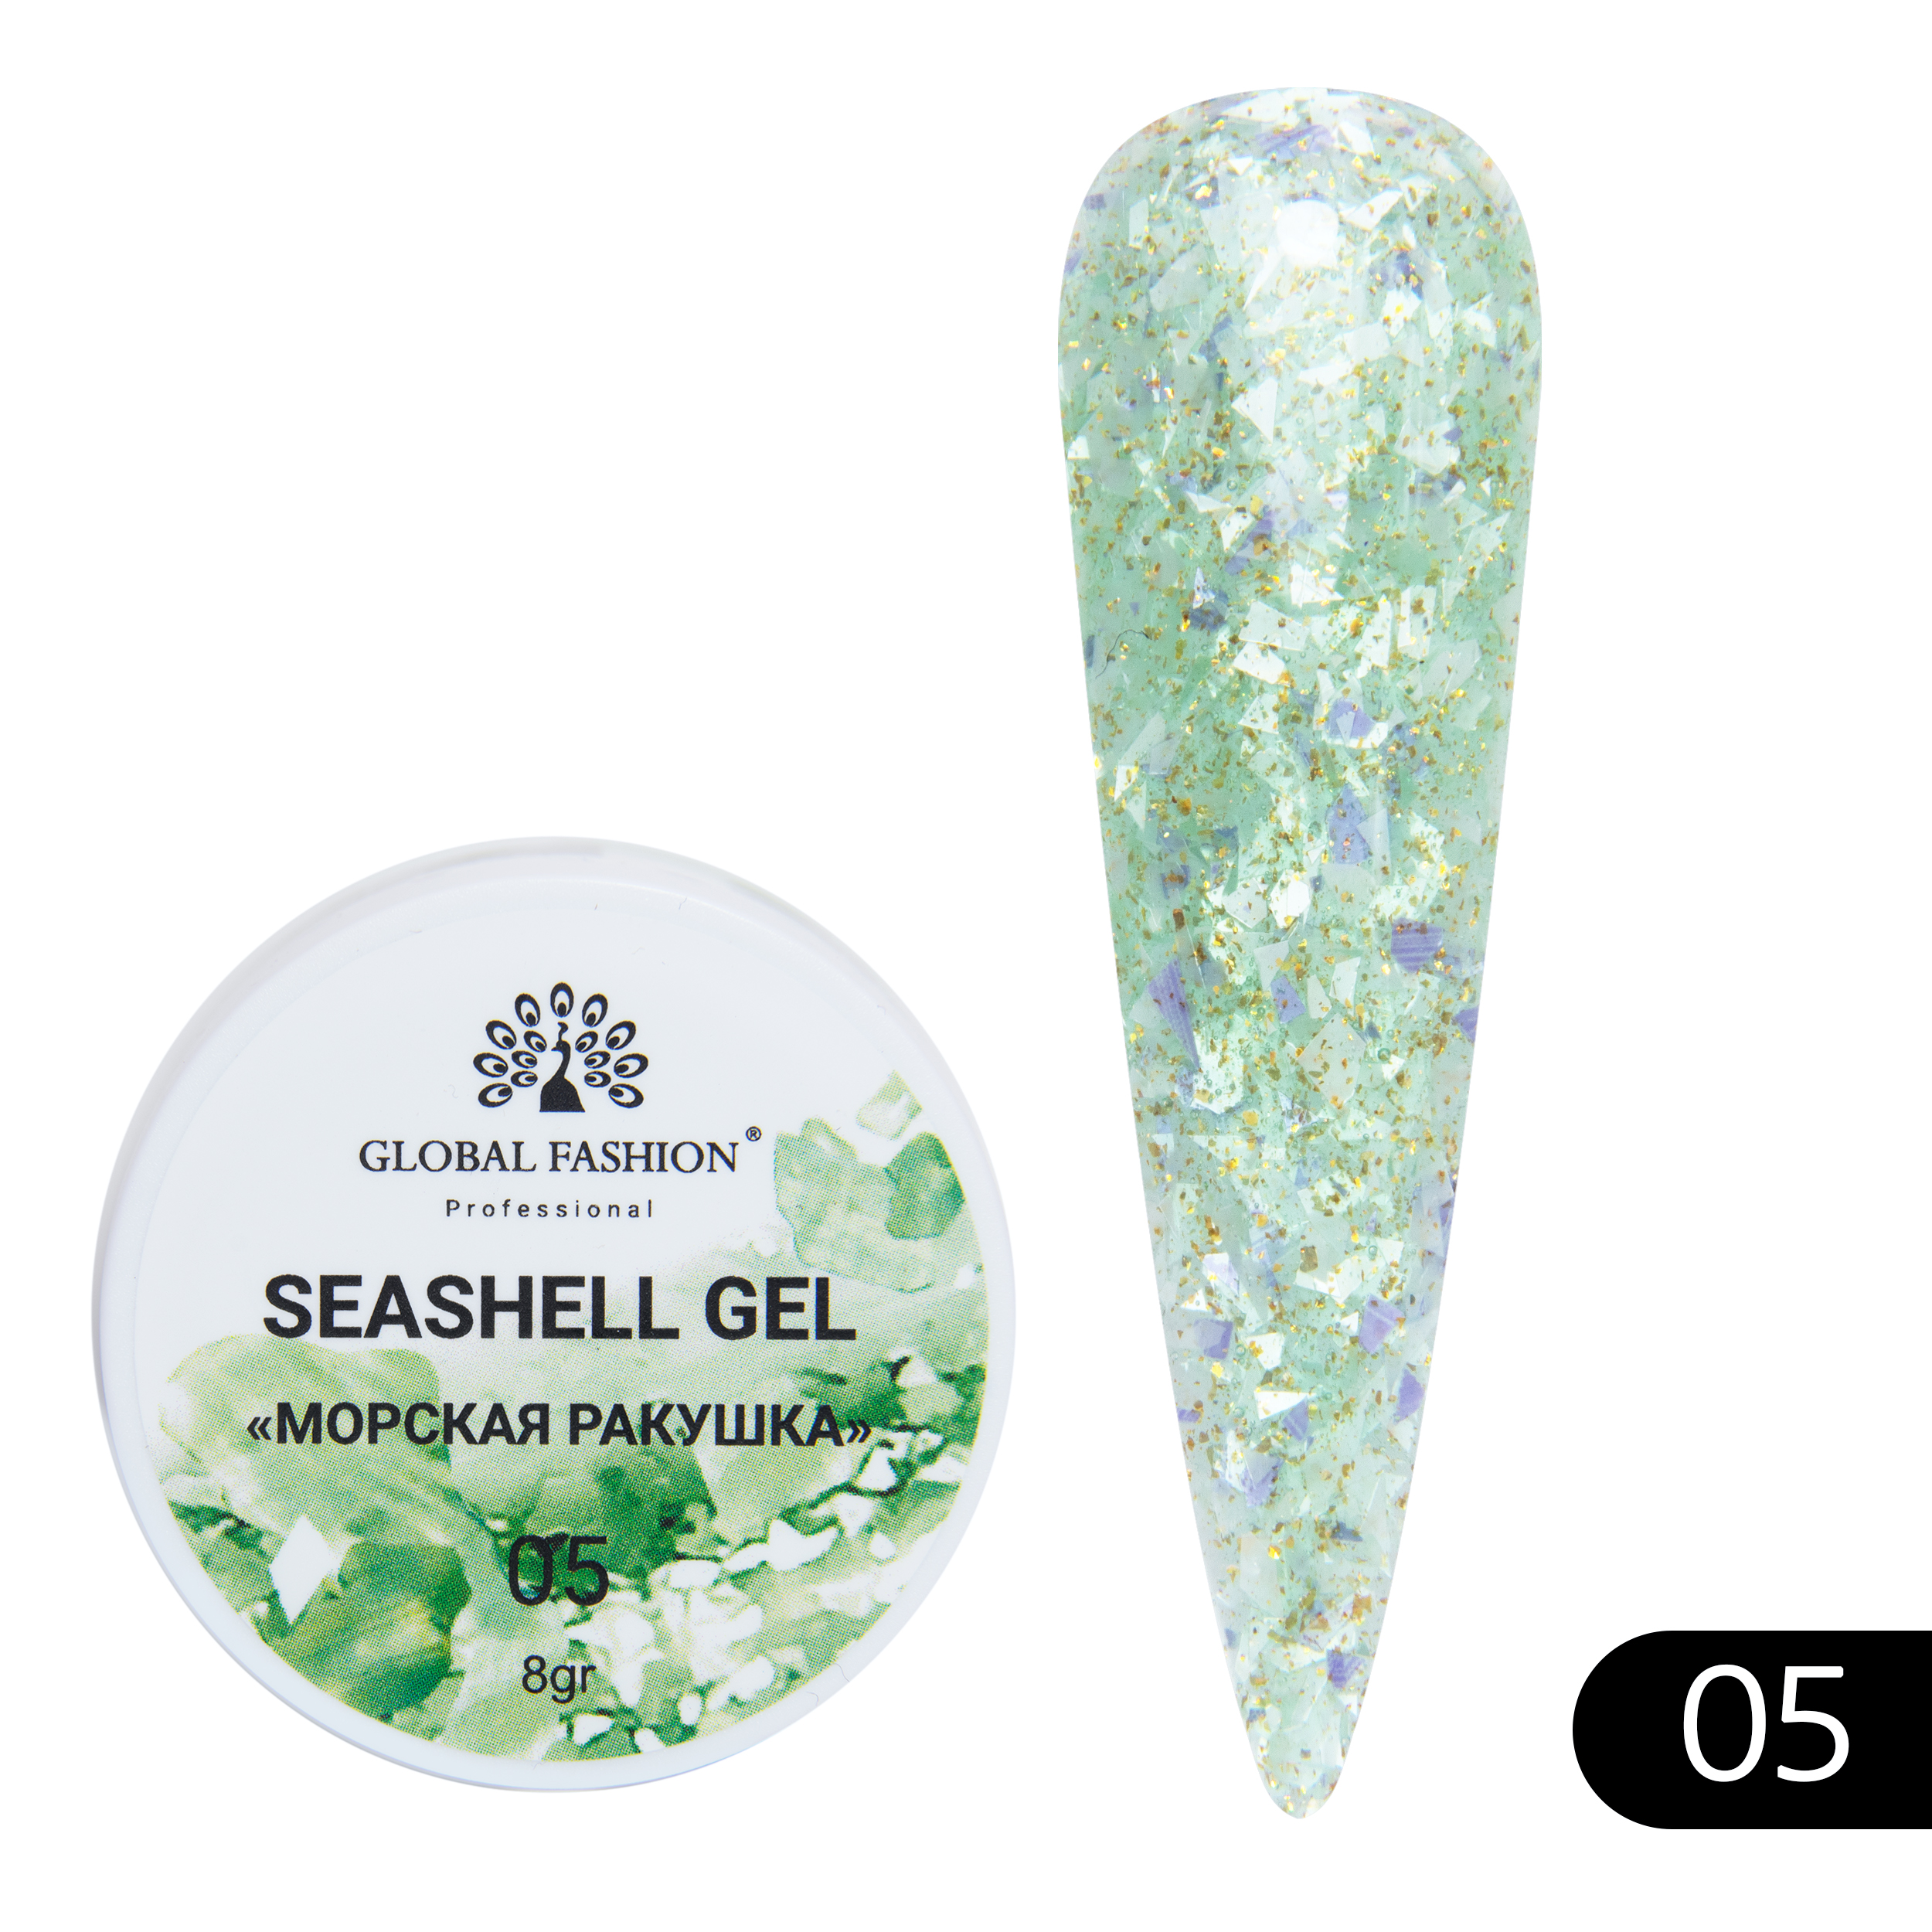 Гель-краска для ногтей Global Fashion с мраморным эффектом ракушки Seashell Gel №05 5 г закон ракушки повесть